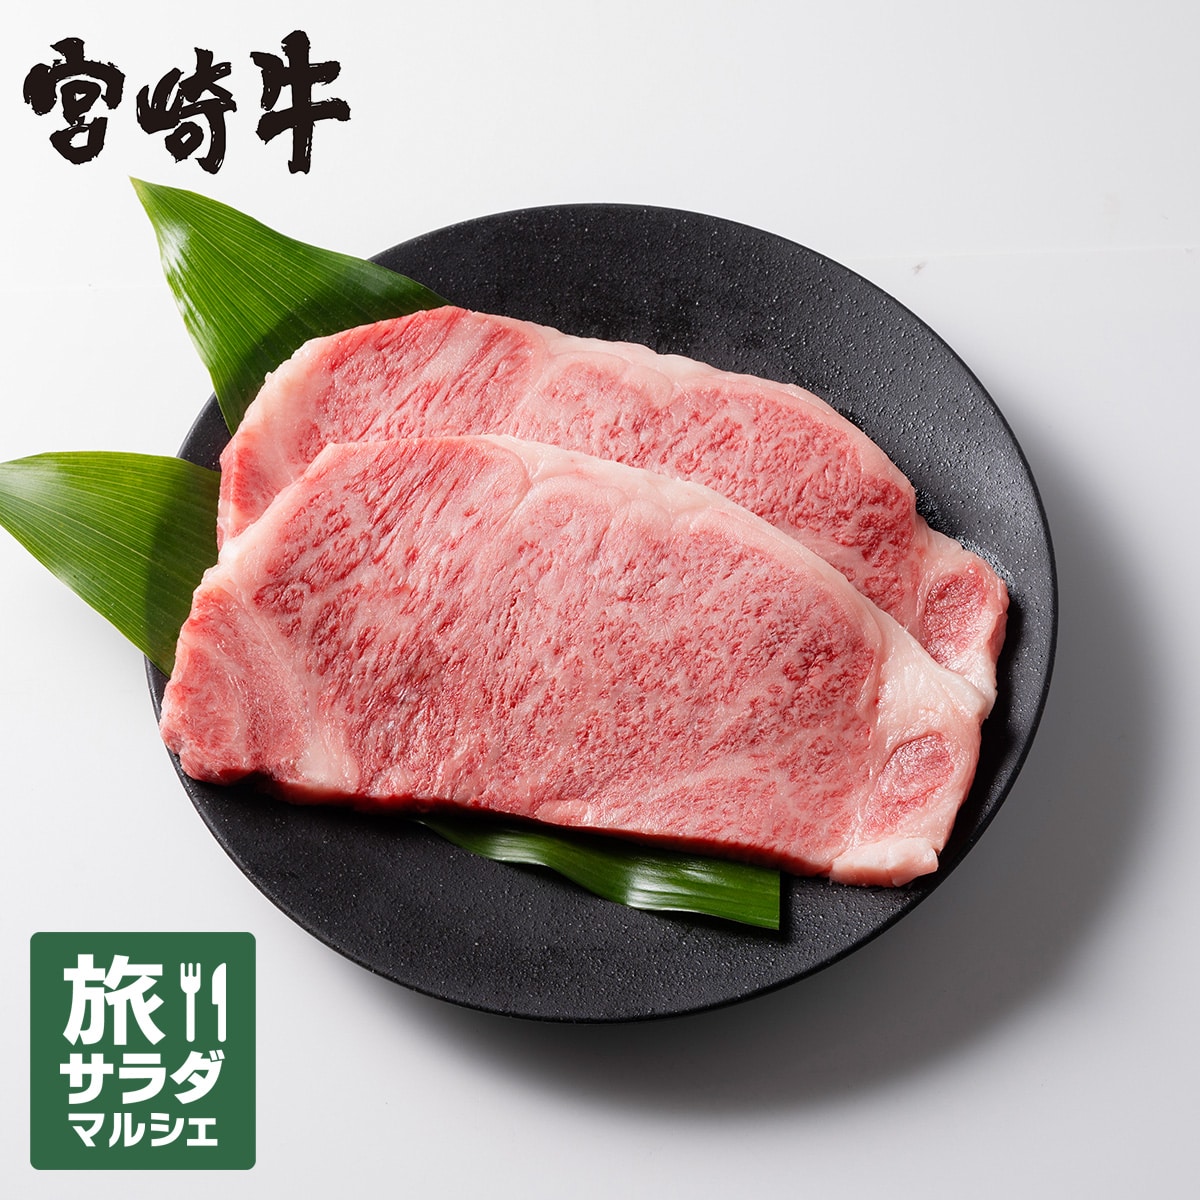 【ミヤチク】『冷凍の匠』宮崎牛ロースステーキ